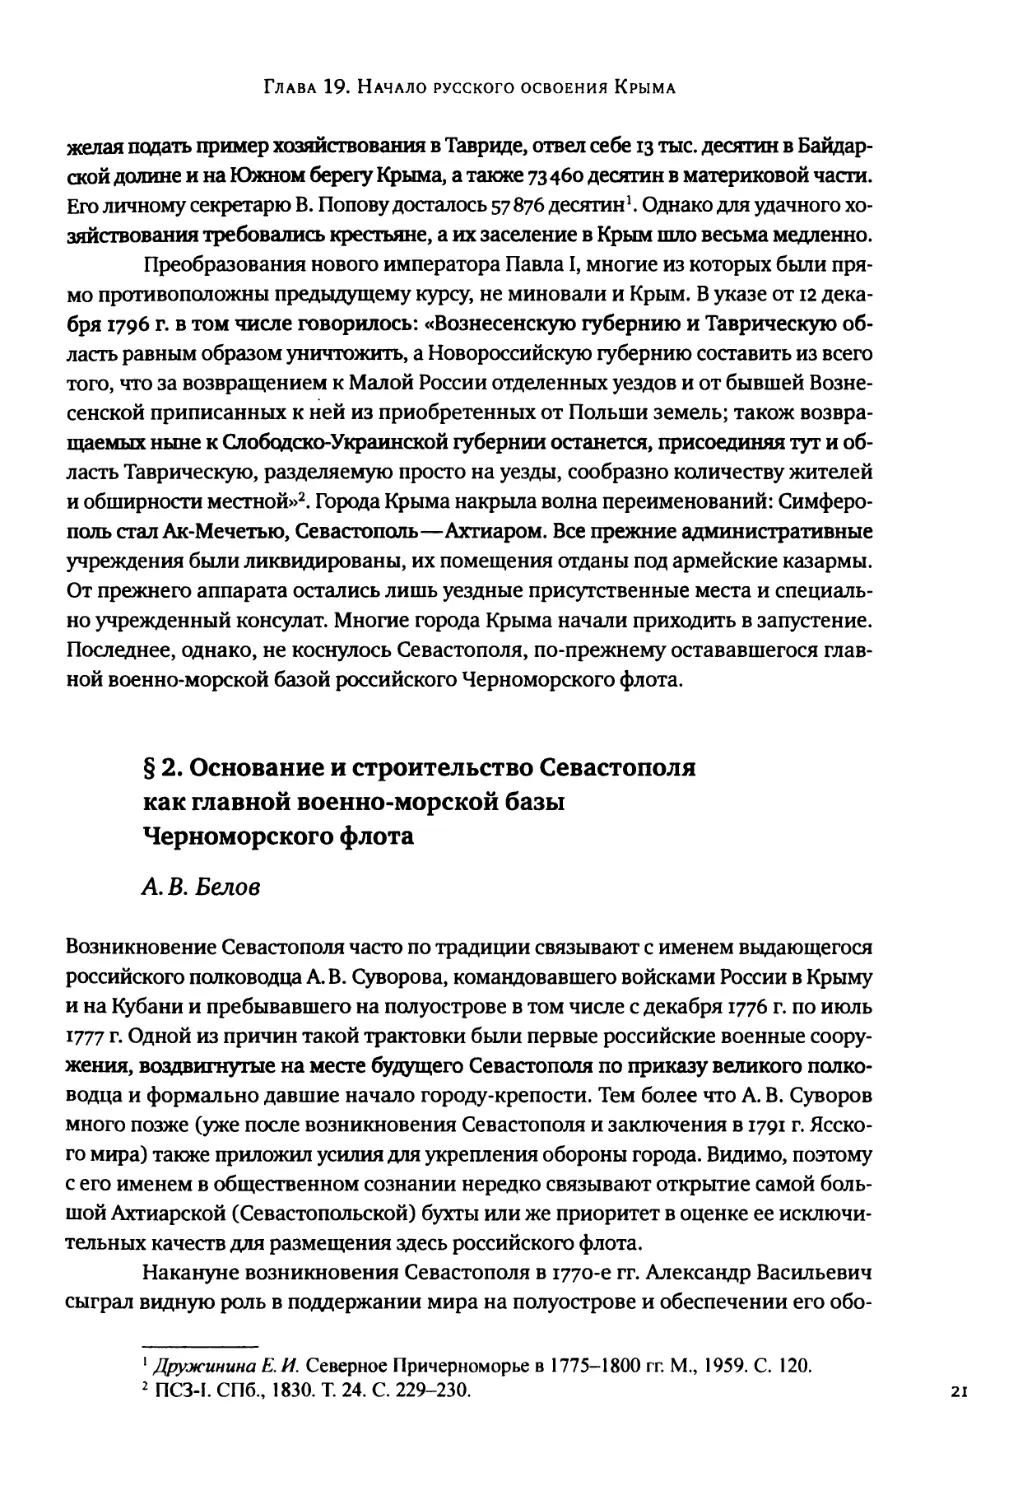 § 2. Основание и строительство Севастополя как главной военно-морской базы Черноморского флота